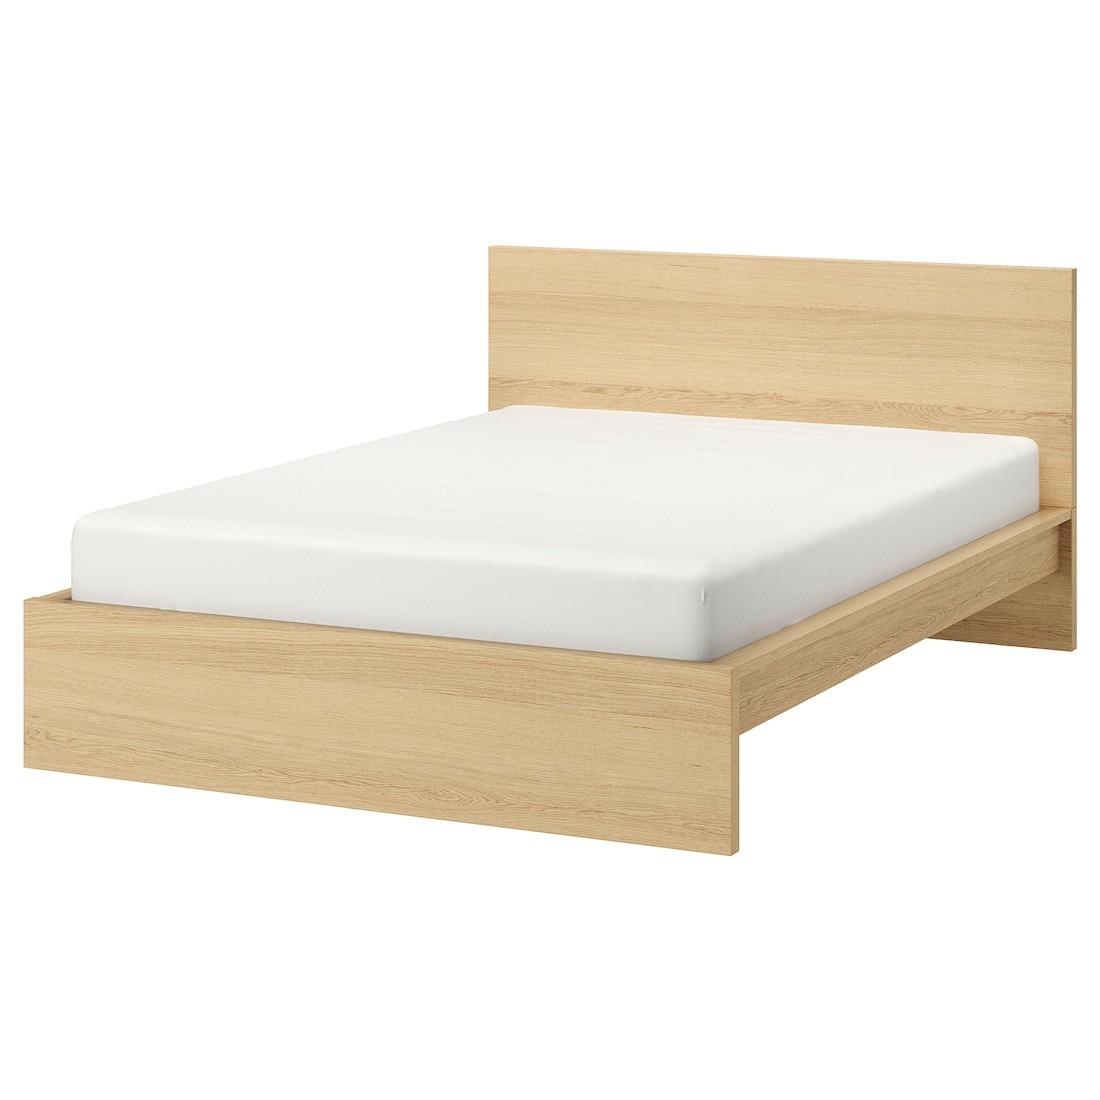 MALM МАЛЬМ Кровать двуспальная, высокий, дубовый шпон беленый, 180x200 см